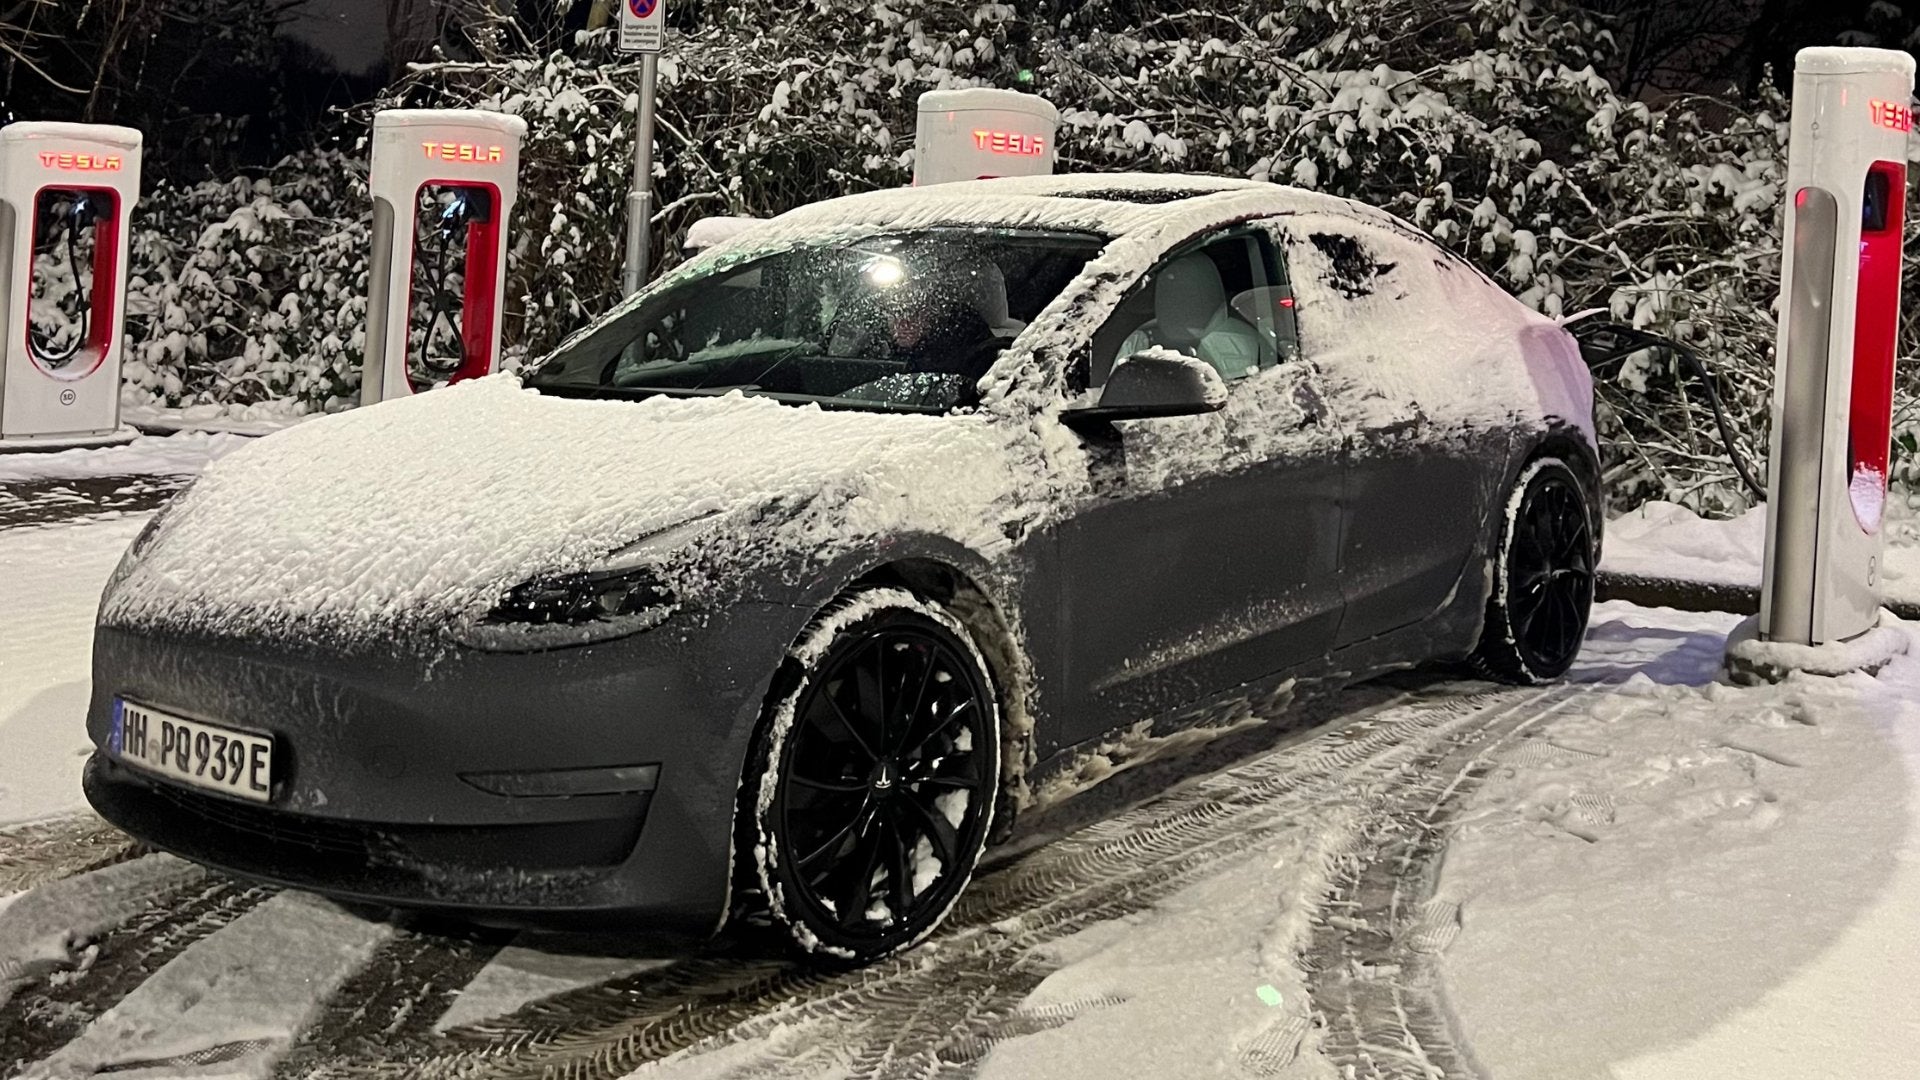 Wintertest von Elektroautos in Finnland - Ist das Tesla Model 3 der Gewinner? - Shop4Tesla